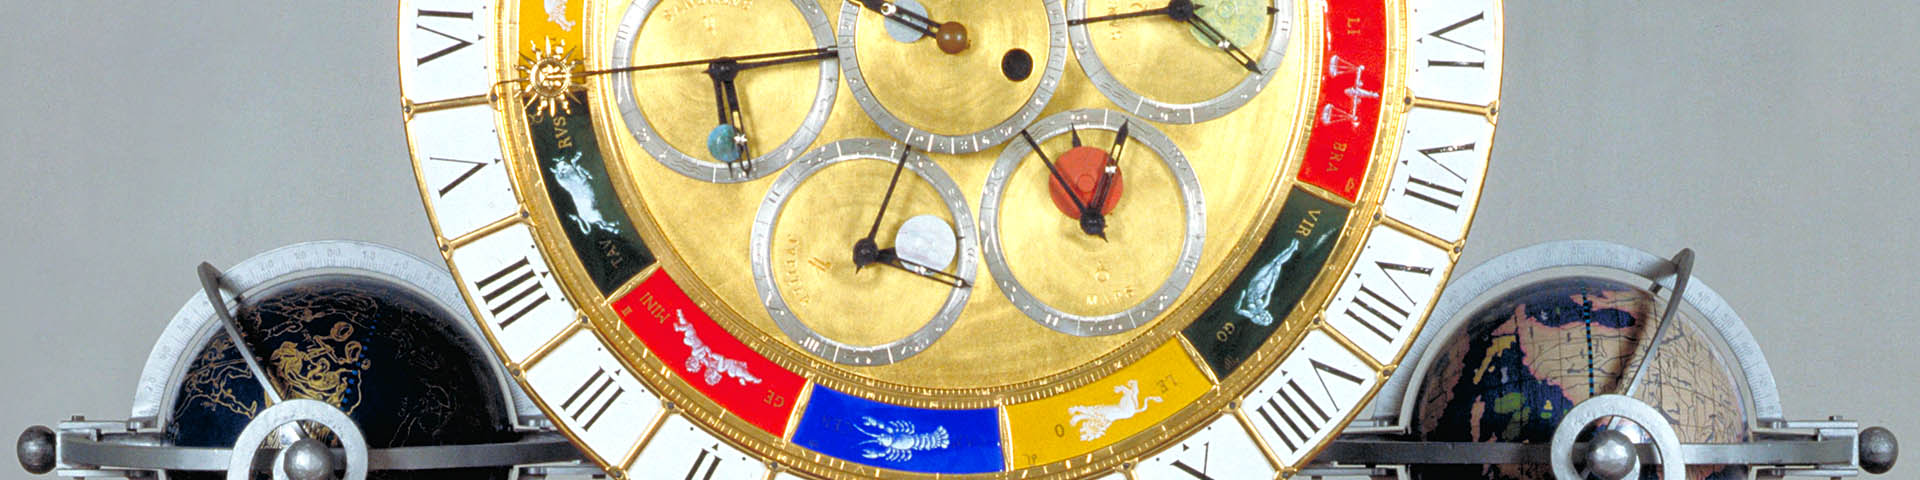 Clock of Lorenzo della Volpaia